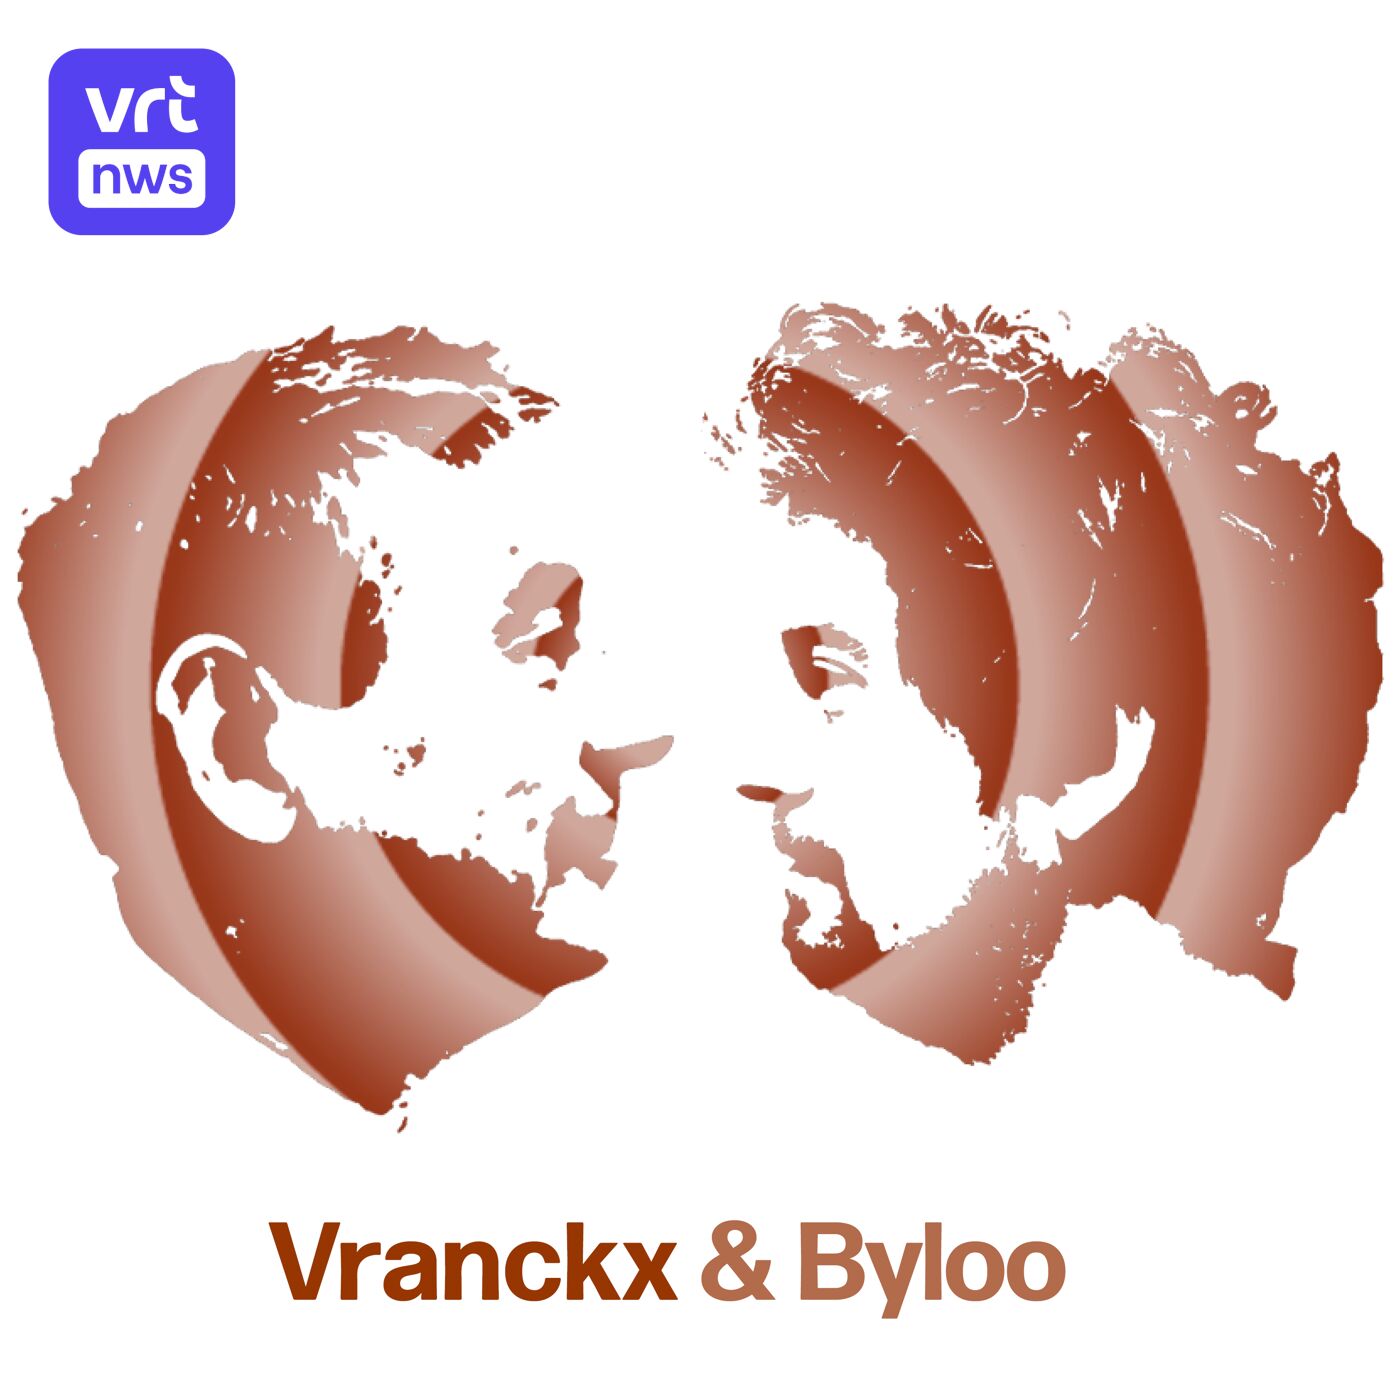 Vranckx & Byloo